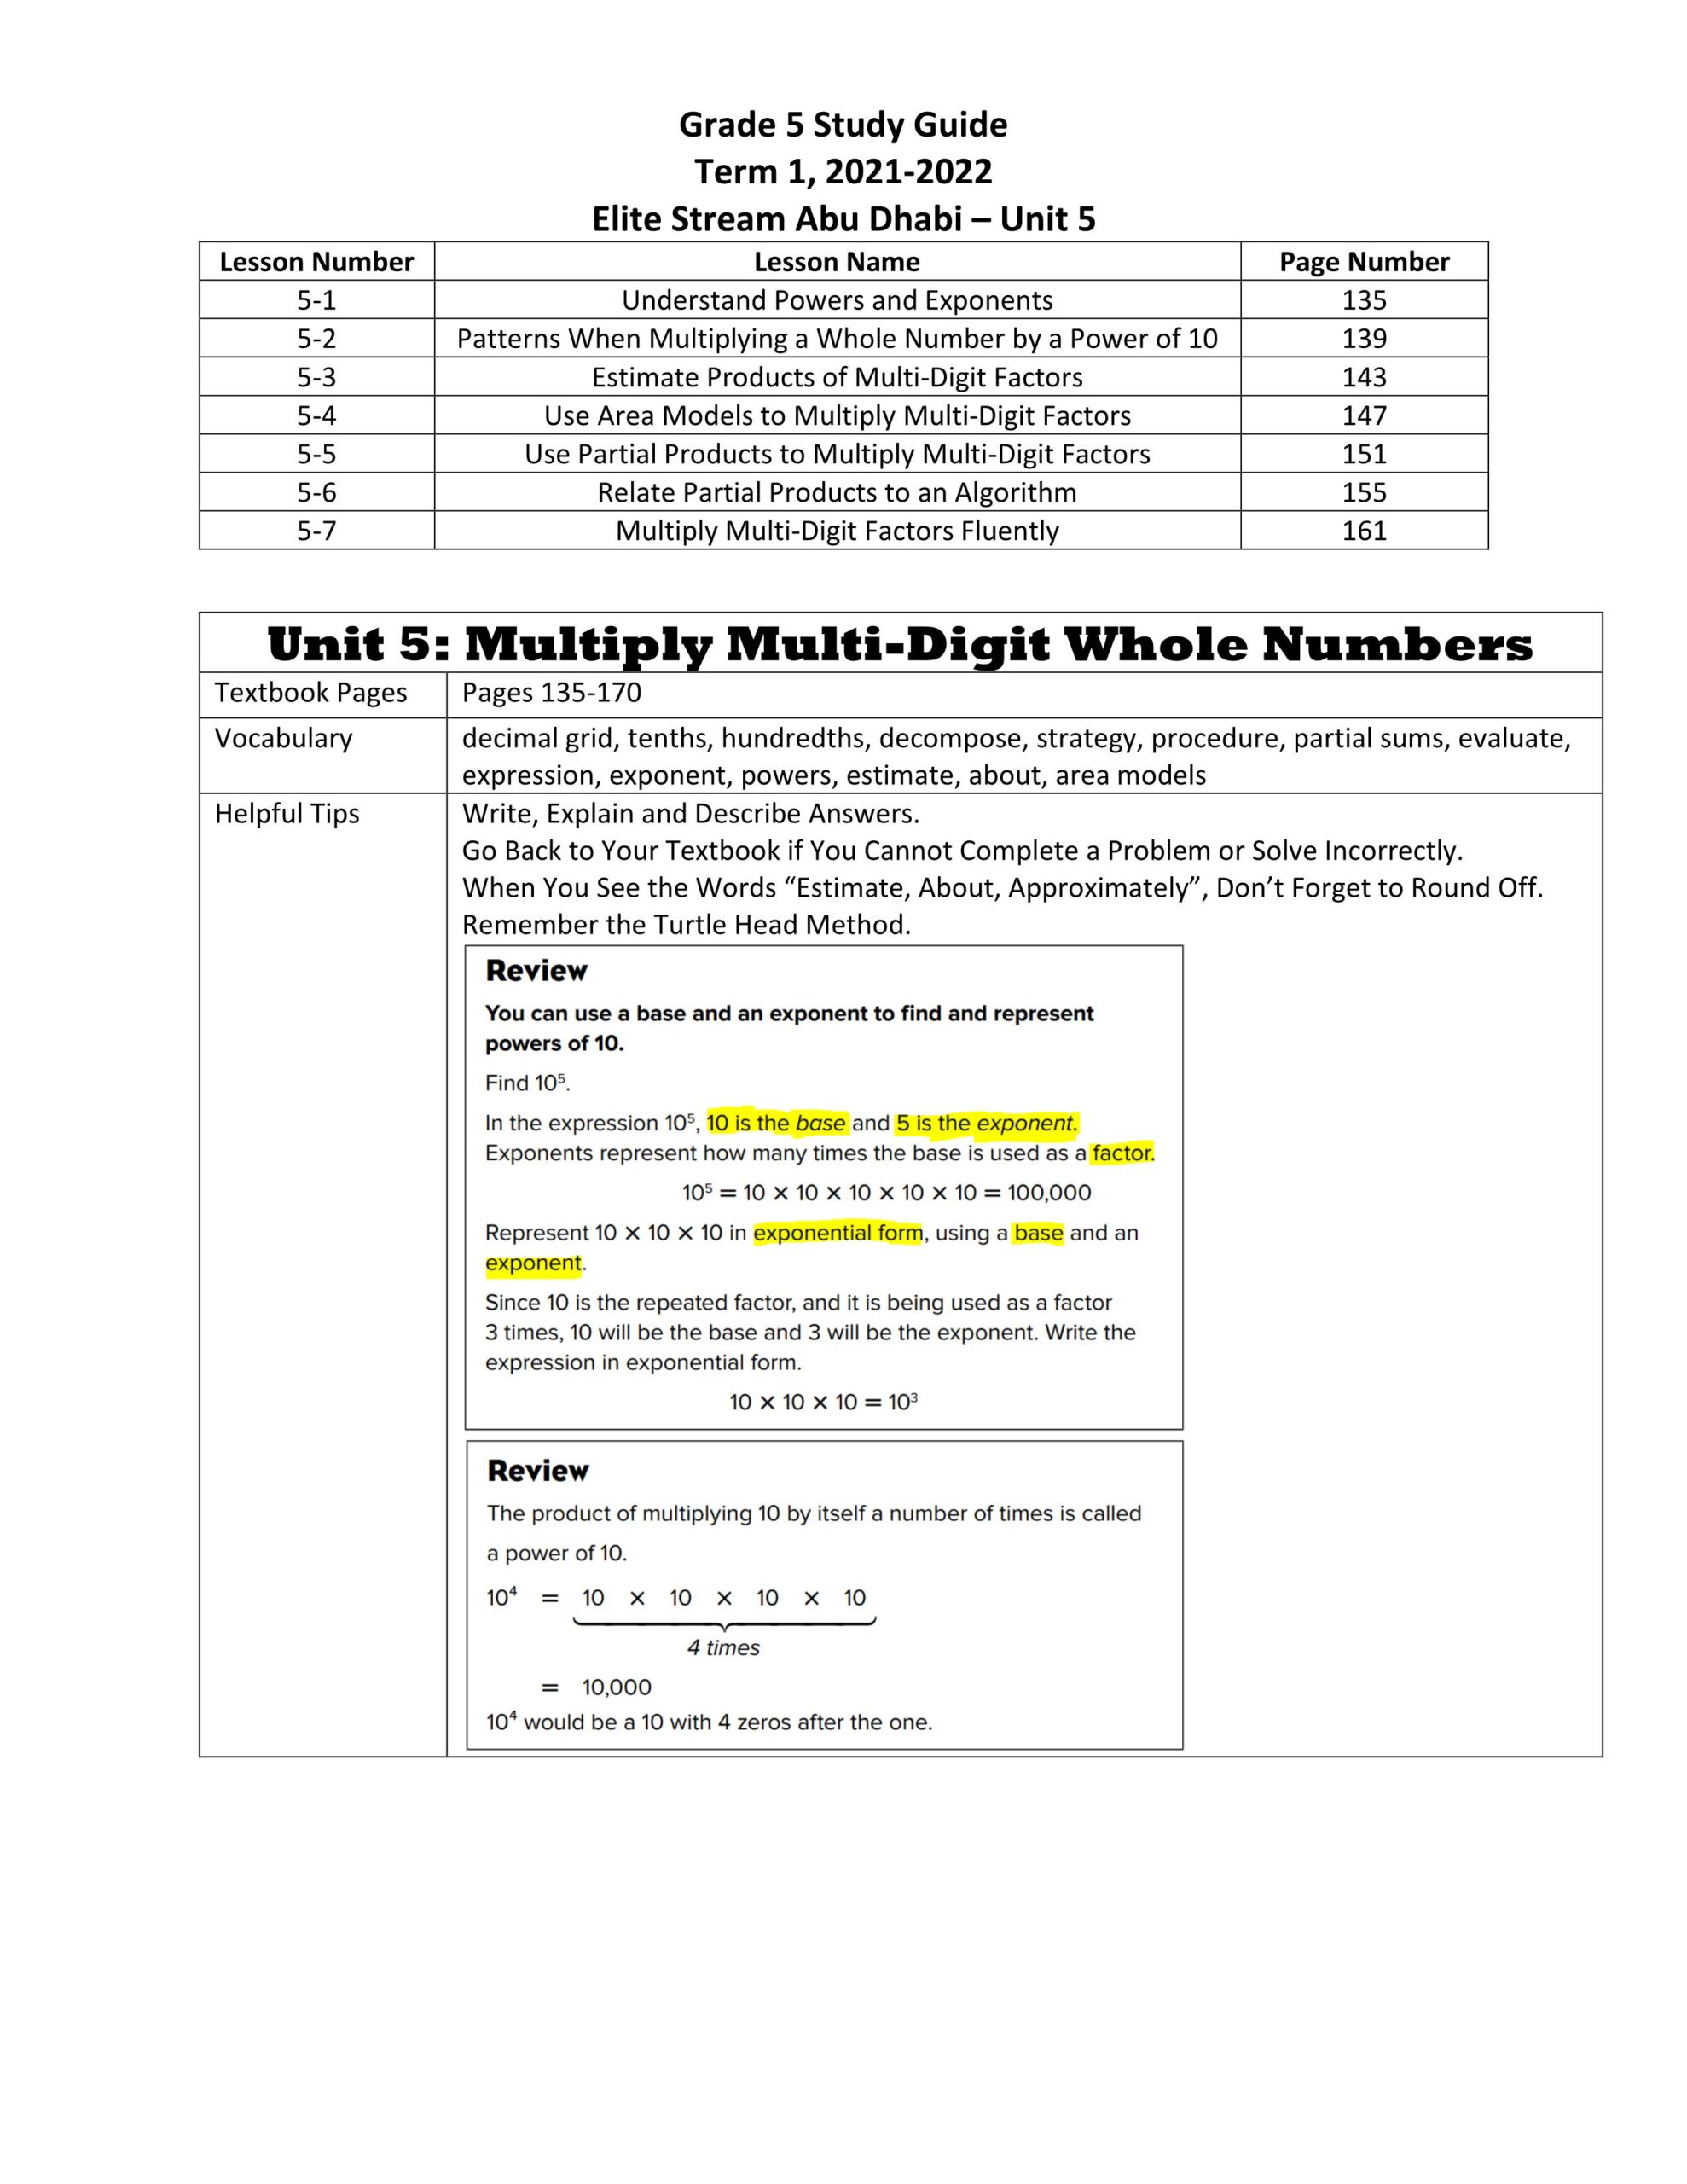 أوراق عمل Multiply Multi-Digit Whole Numbers الرياضيات المتكاملة الصف الخامس